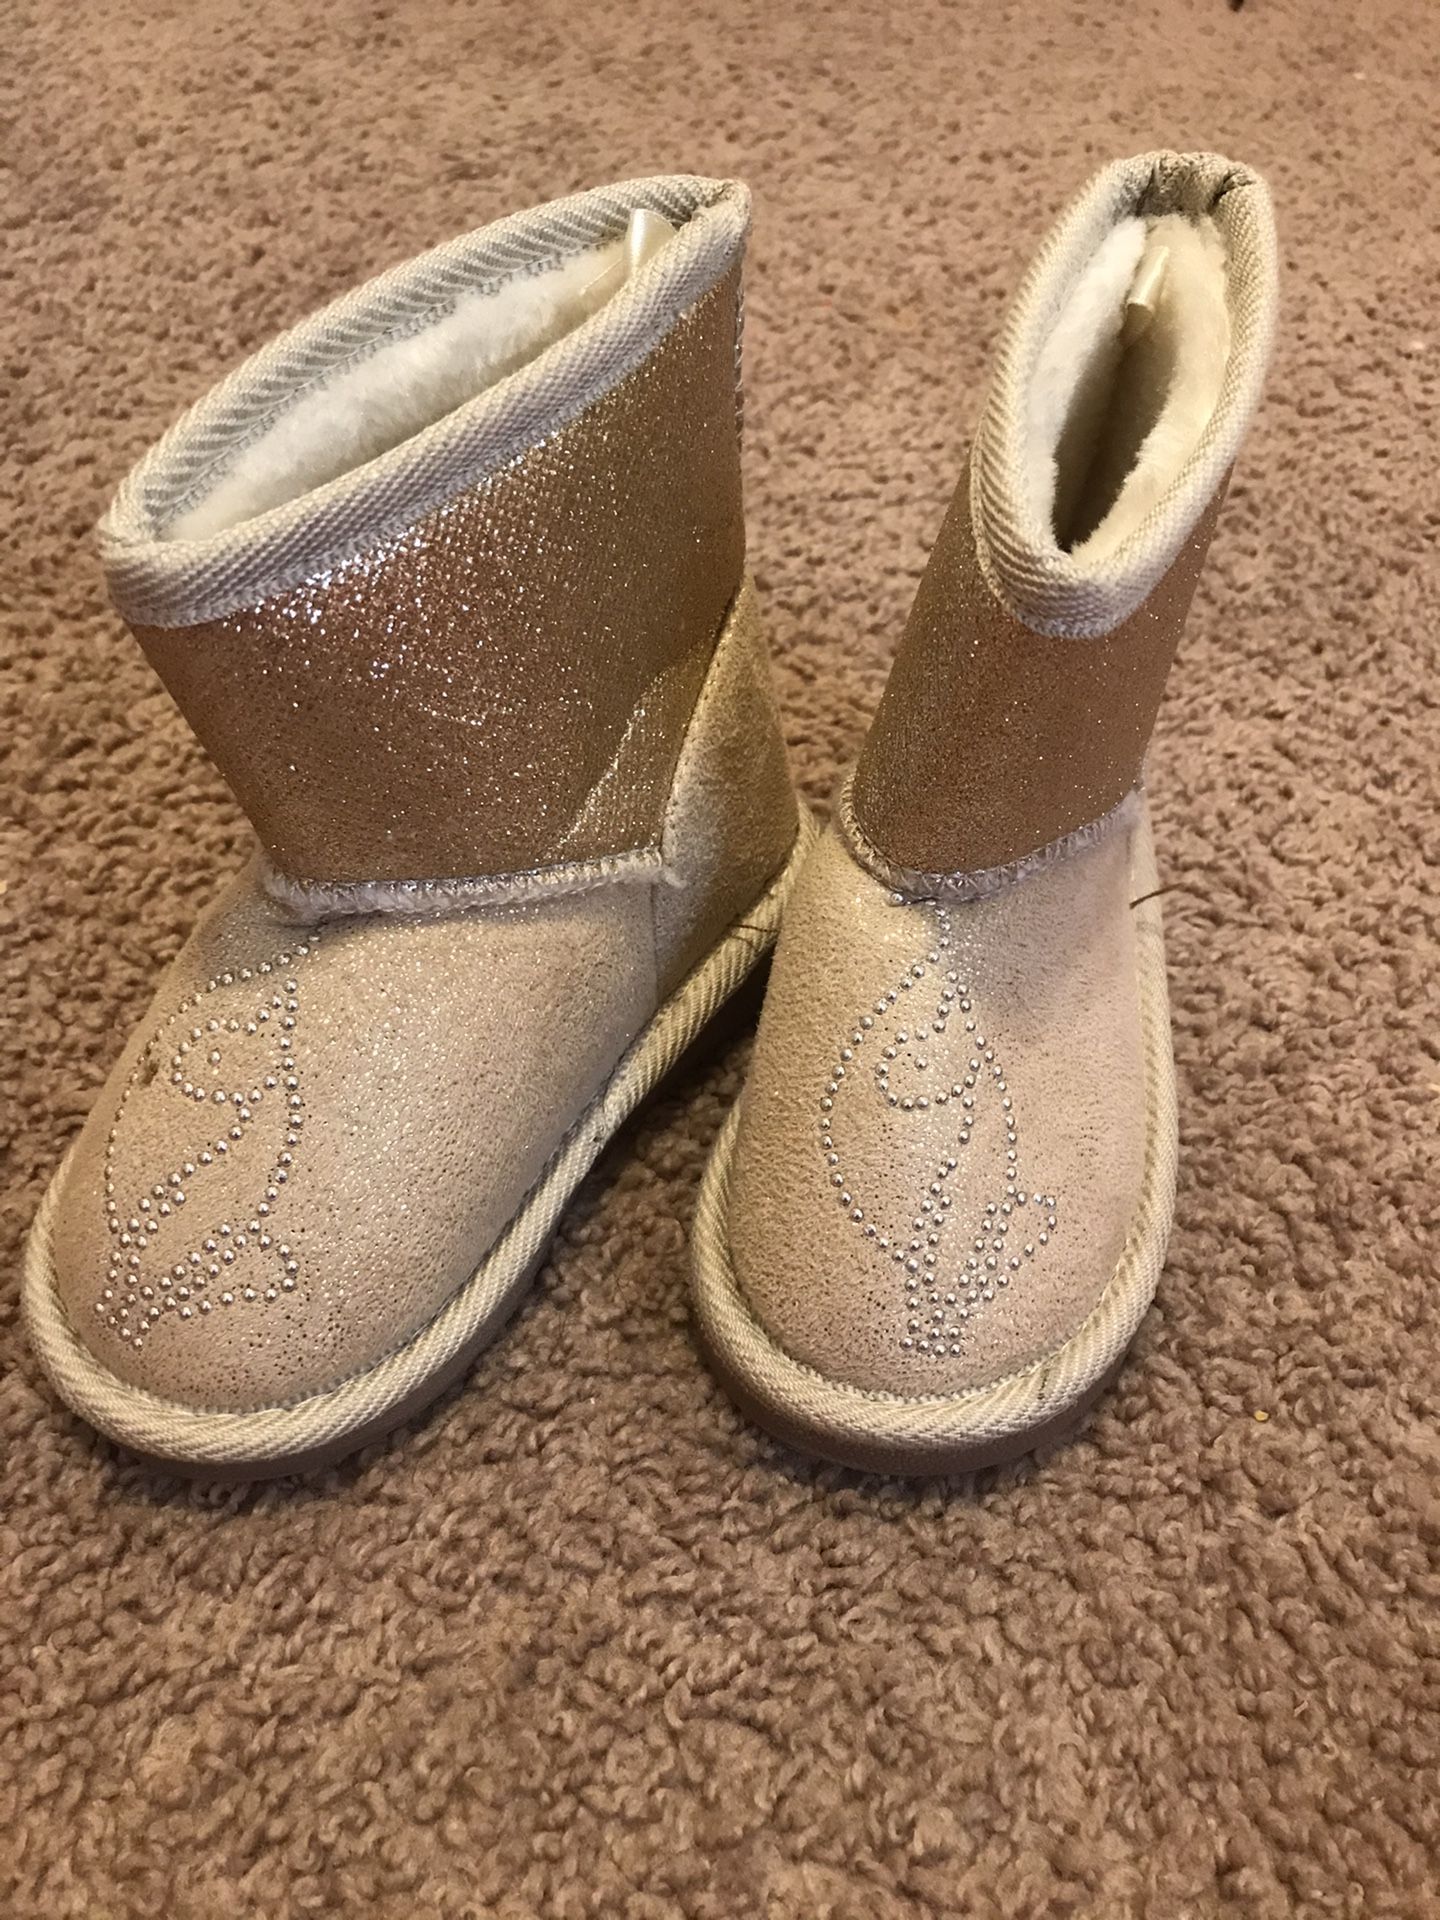 Little girls 6c boots $10